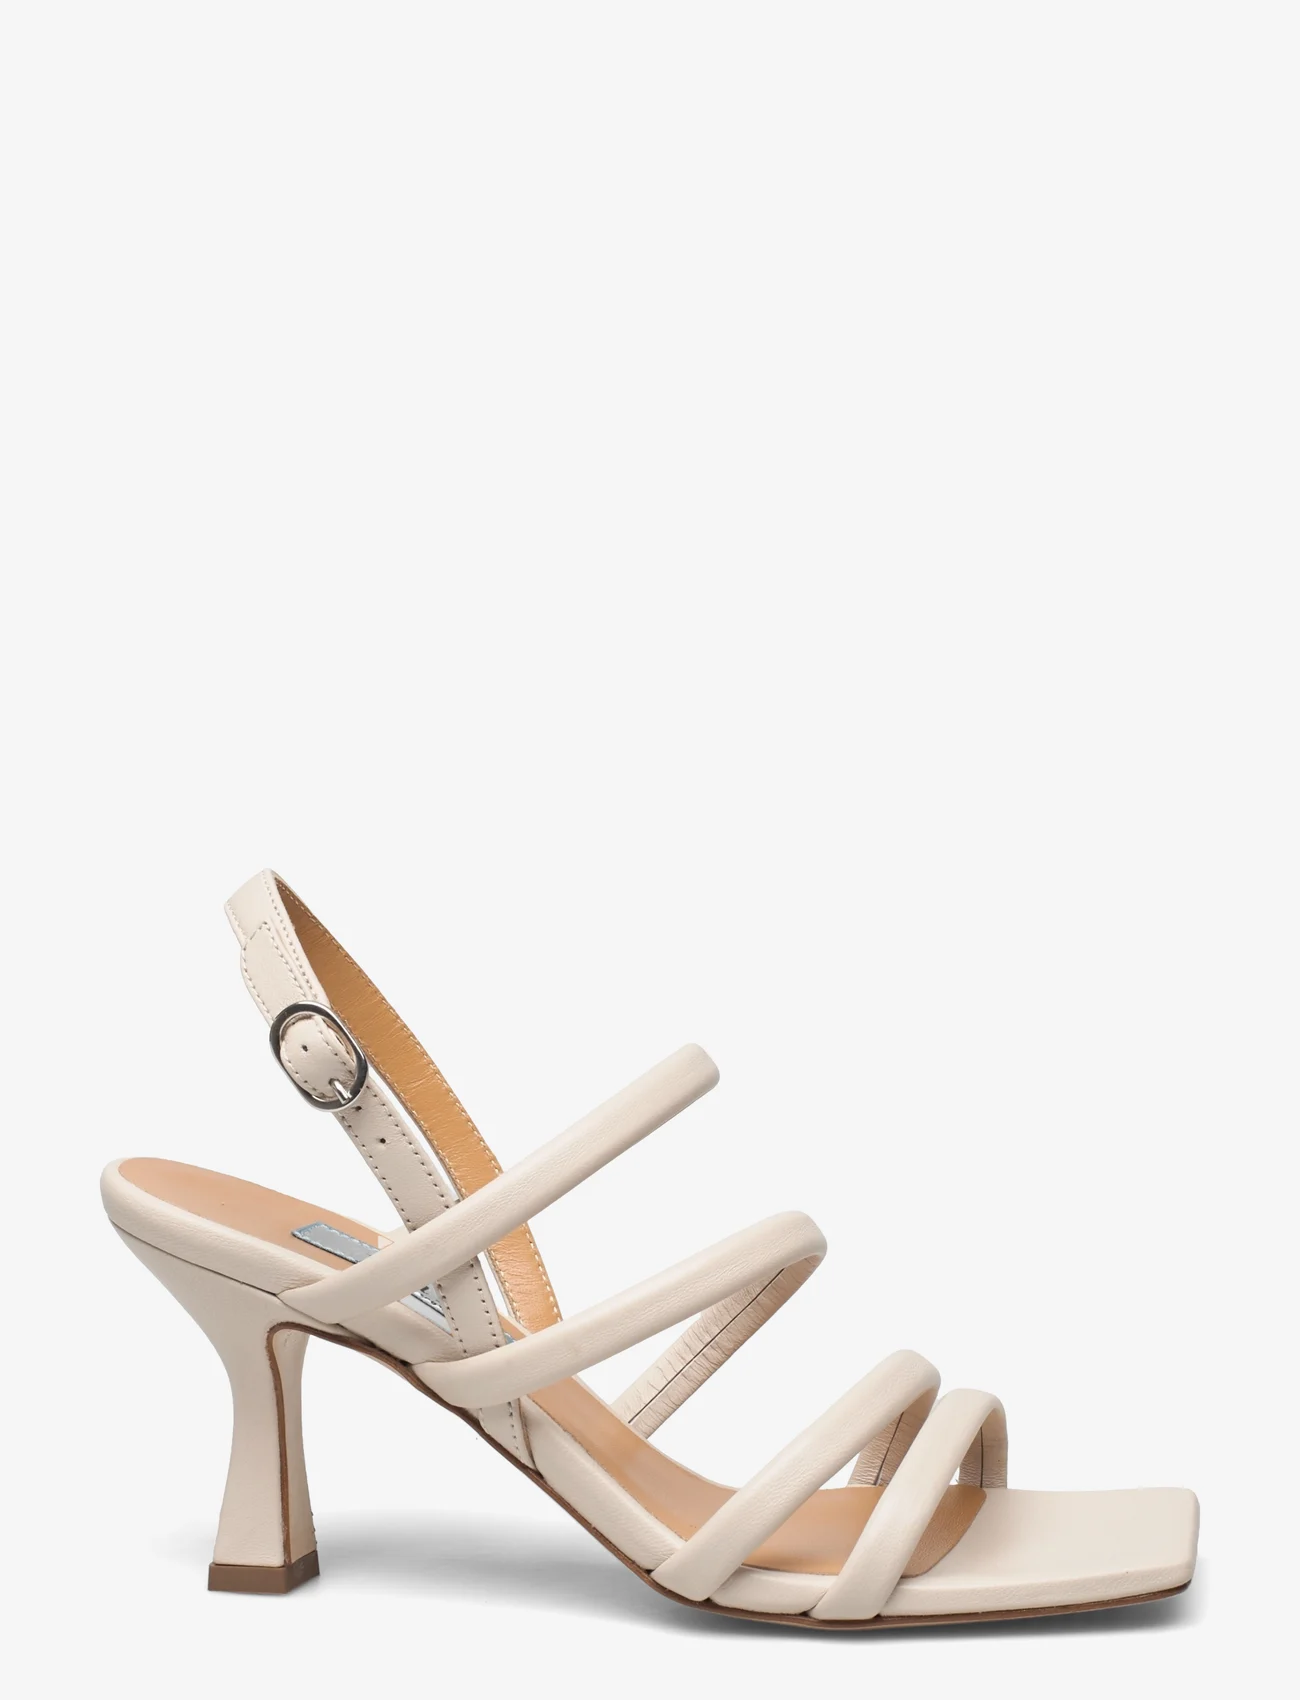 Apair - Multi stringg high heel - odzież imprezowa w cenach outletowych - tapioca - 1